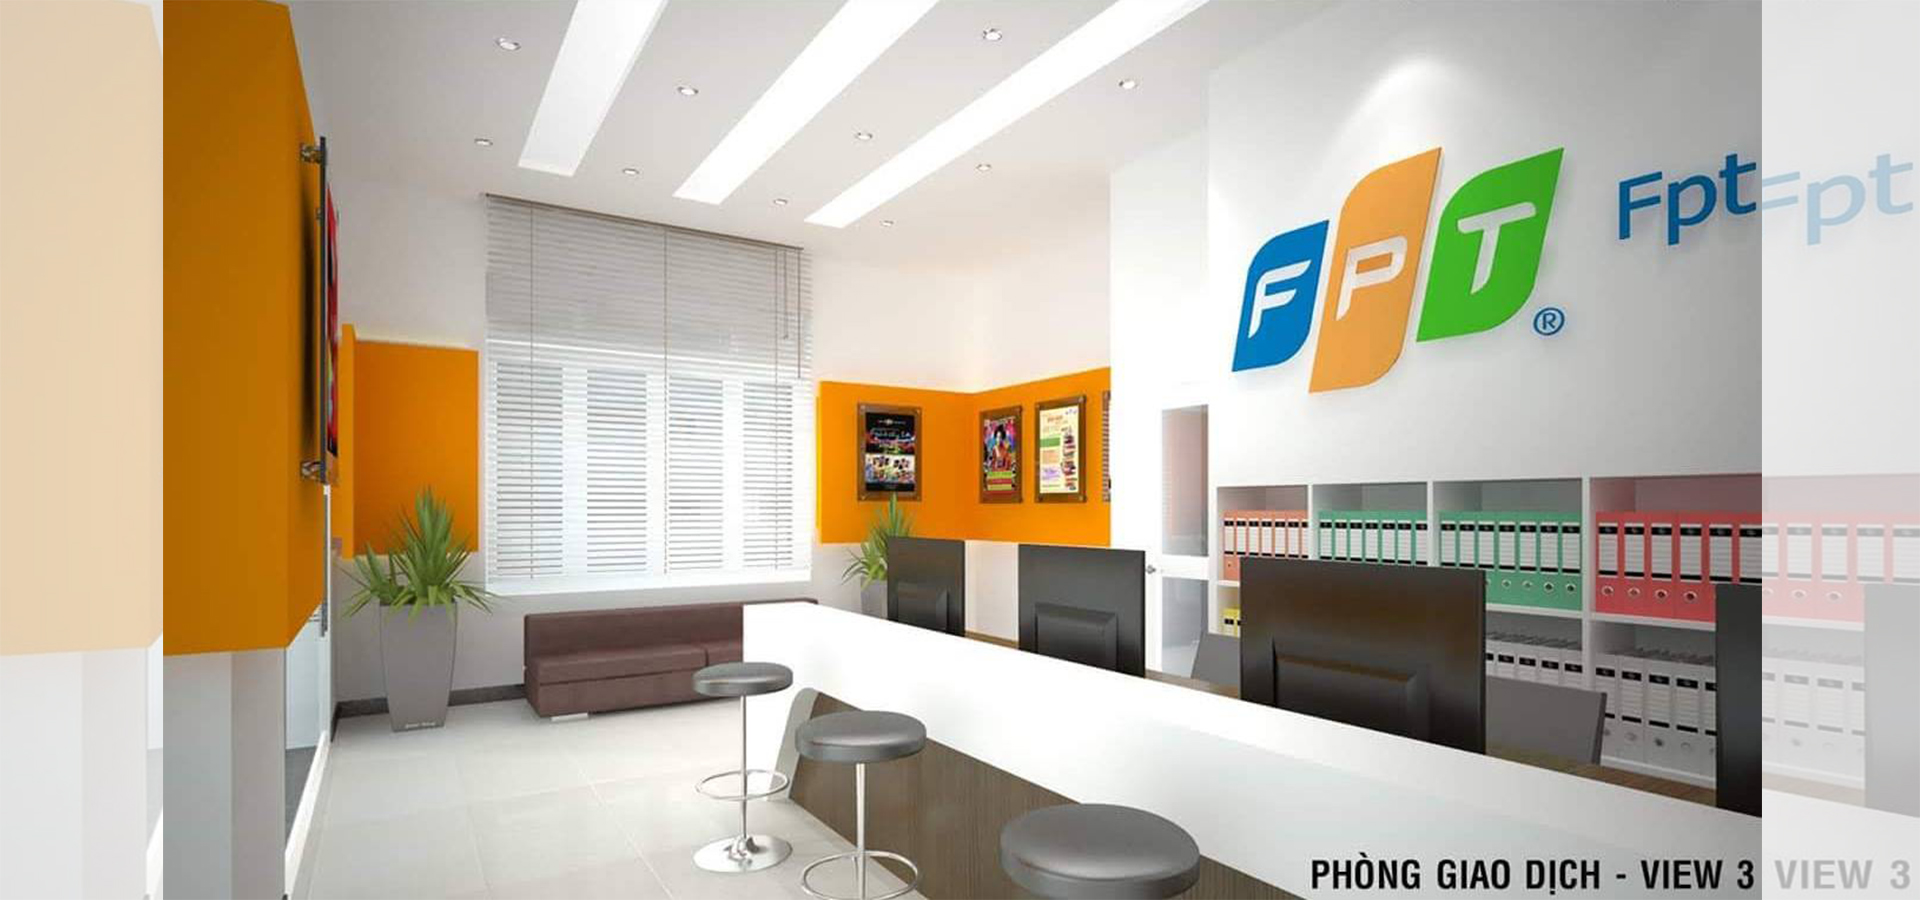 c 5 - Văn Phòng FPT thi công thiết kế trọn gói